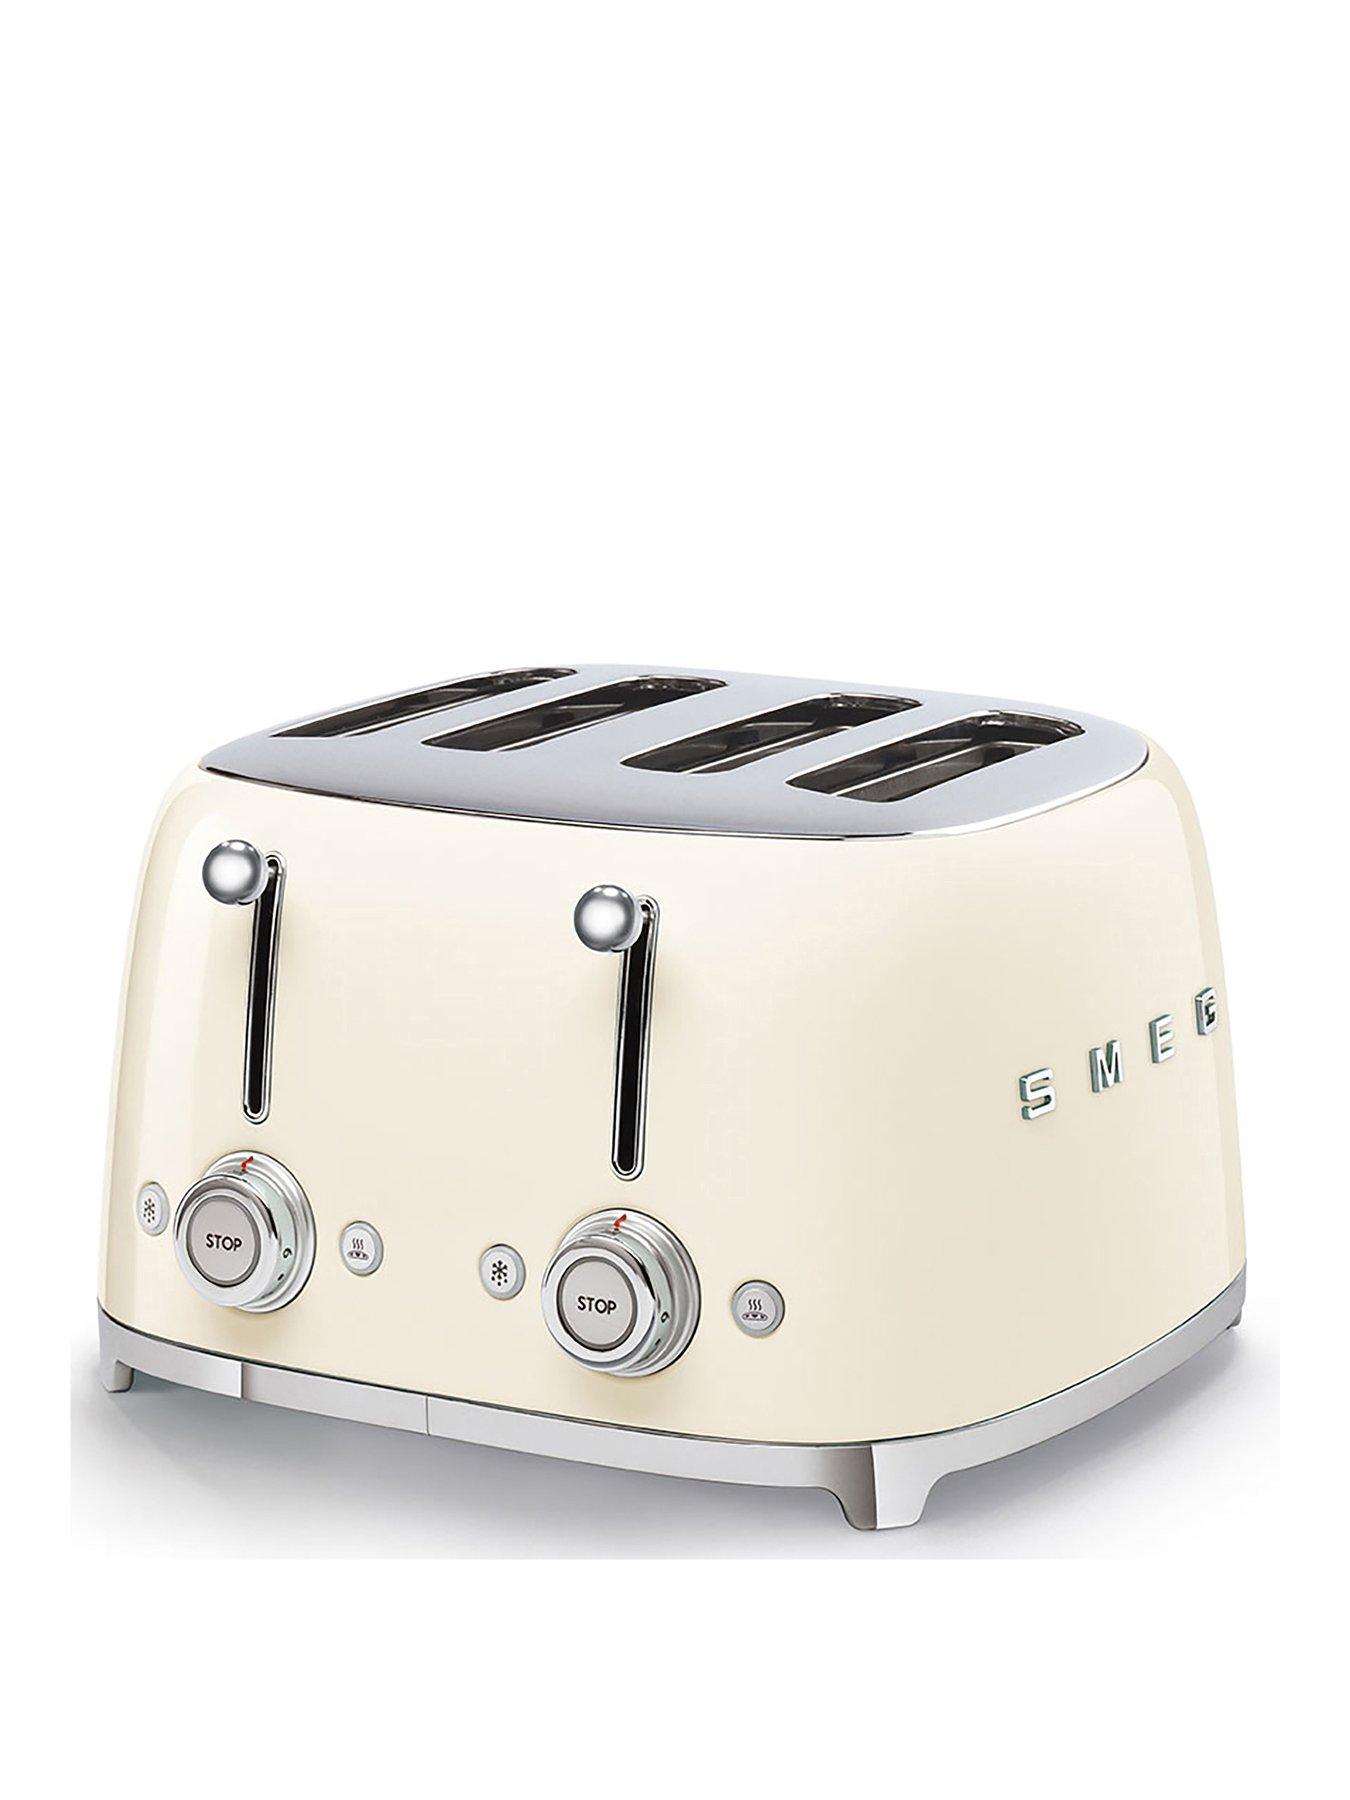 Smeg Tsf03 Retro Style 4 Slice Toaster, 2000W - Cream